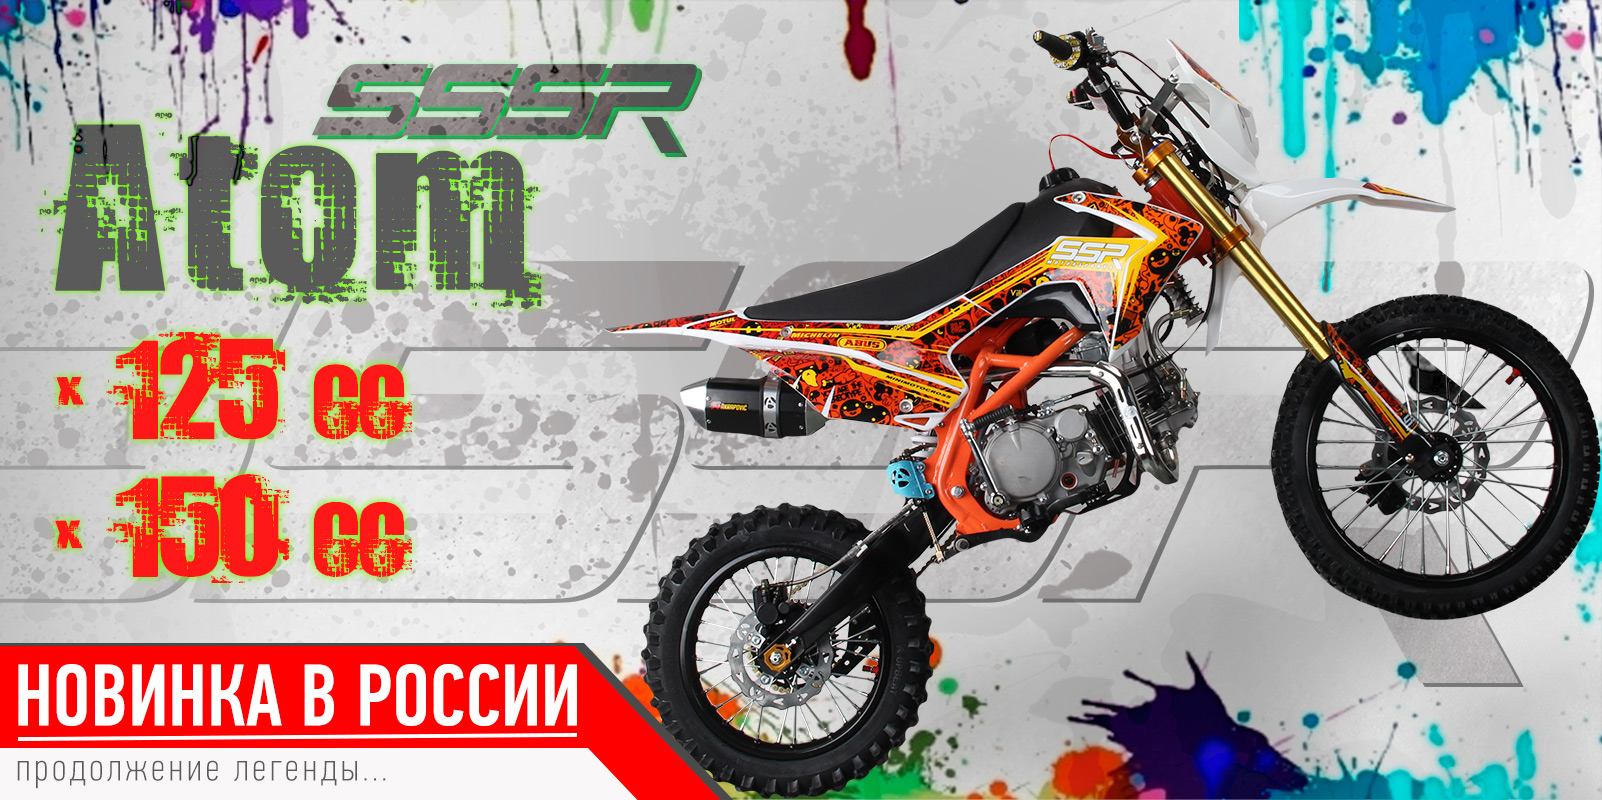 Новинка в России! SSR Atom 125cc/150cc 2017